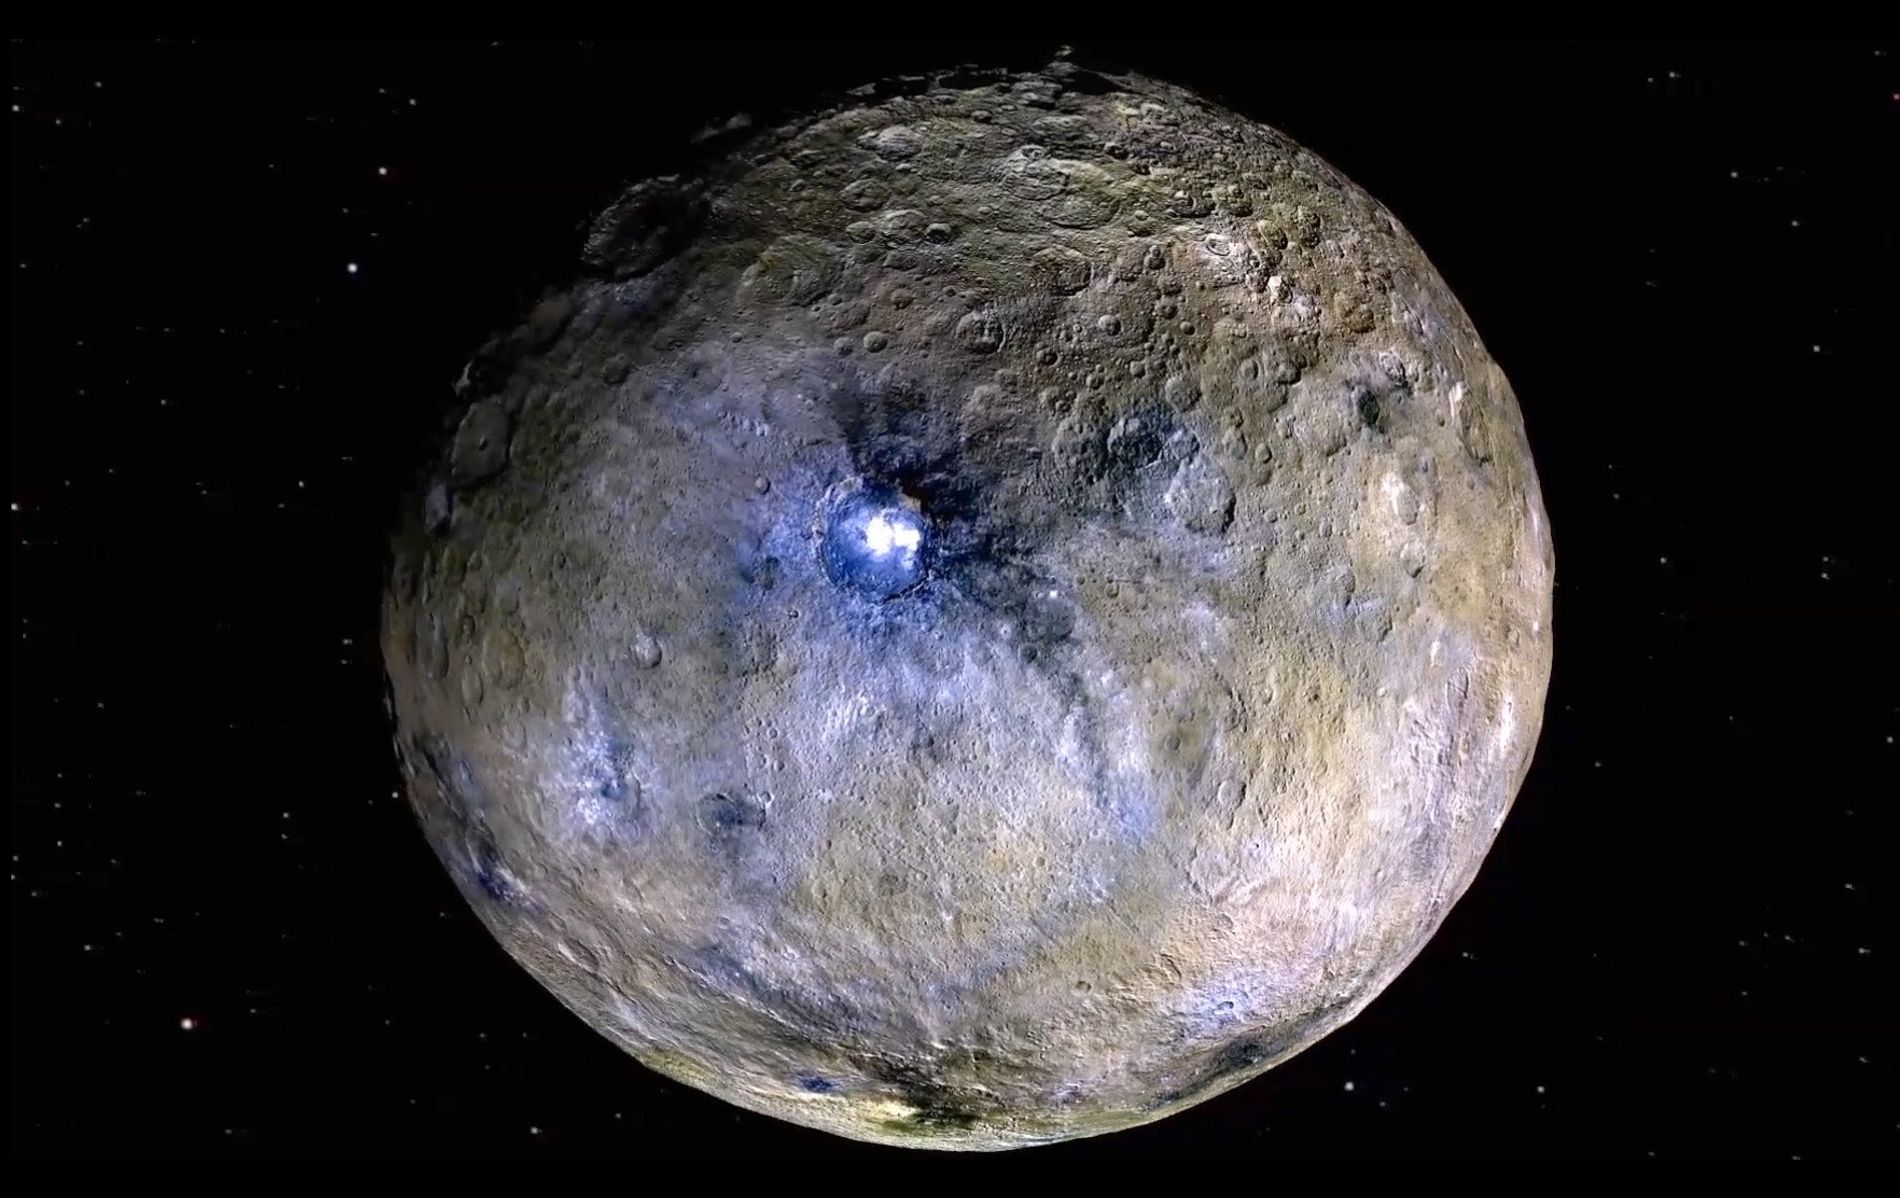 Dwarf planet Ceres. Image Credit: NASA, JPL CAL-TECH, UCLA, MPS, DLR, IDA.